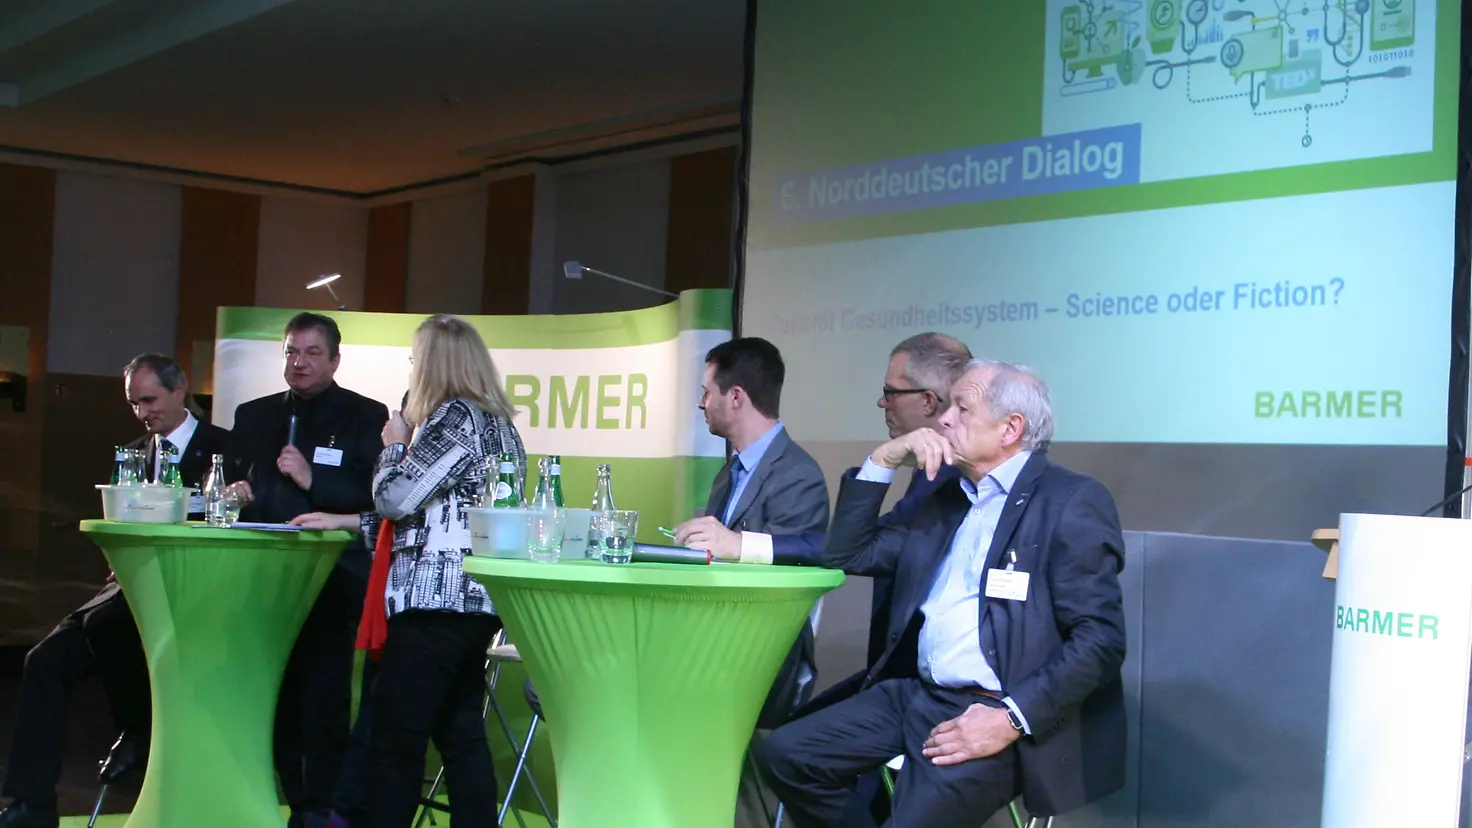 Diskussionsrunde beim 6. Norddeutschen Dialog der BARMER